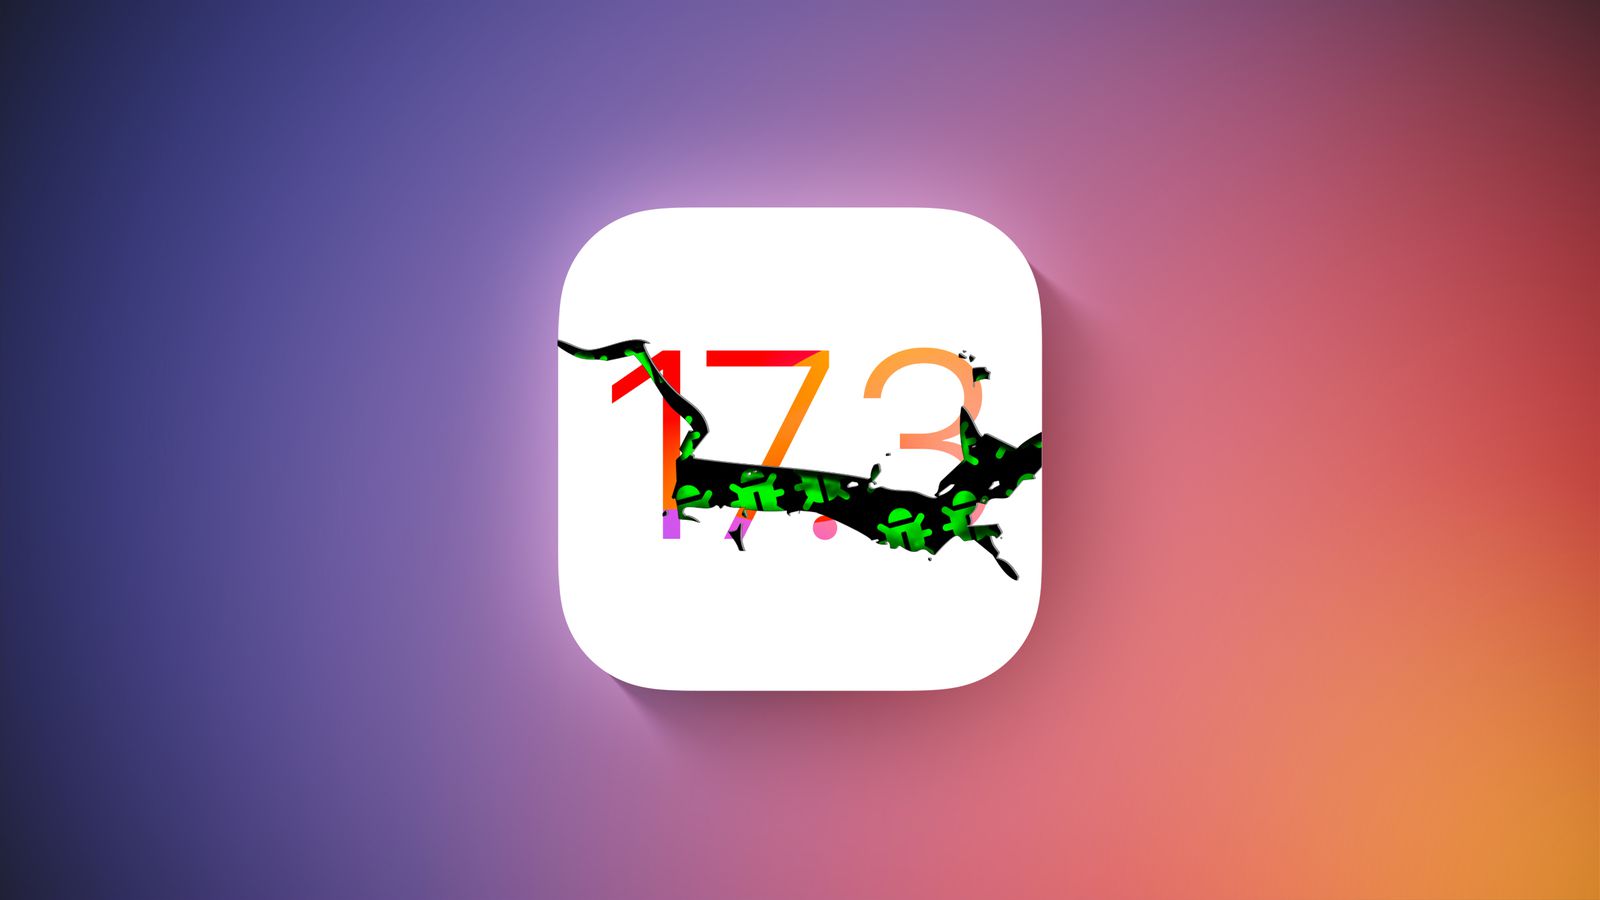 Apple a publié iOS 17.3 Beta 2 mais a retiré la mise à jour quelques heures plus tard en raison d'un grave bug.